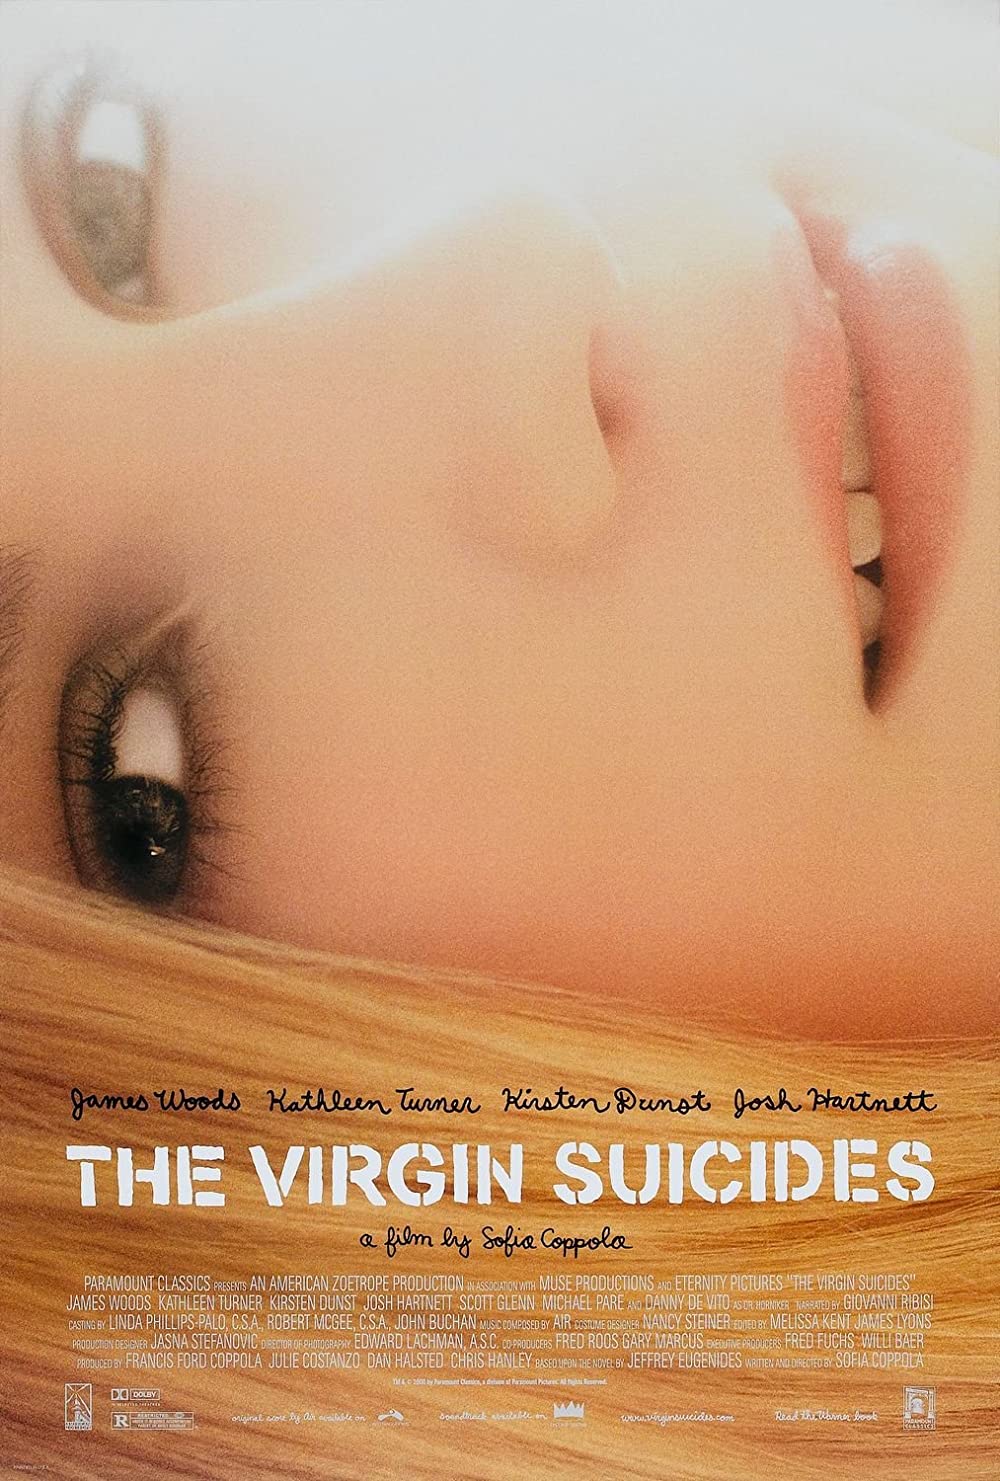 Filmbeschreibung zu The Virgin Suicides